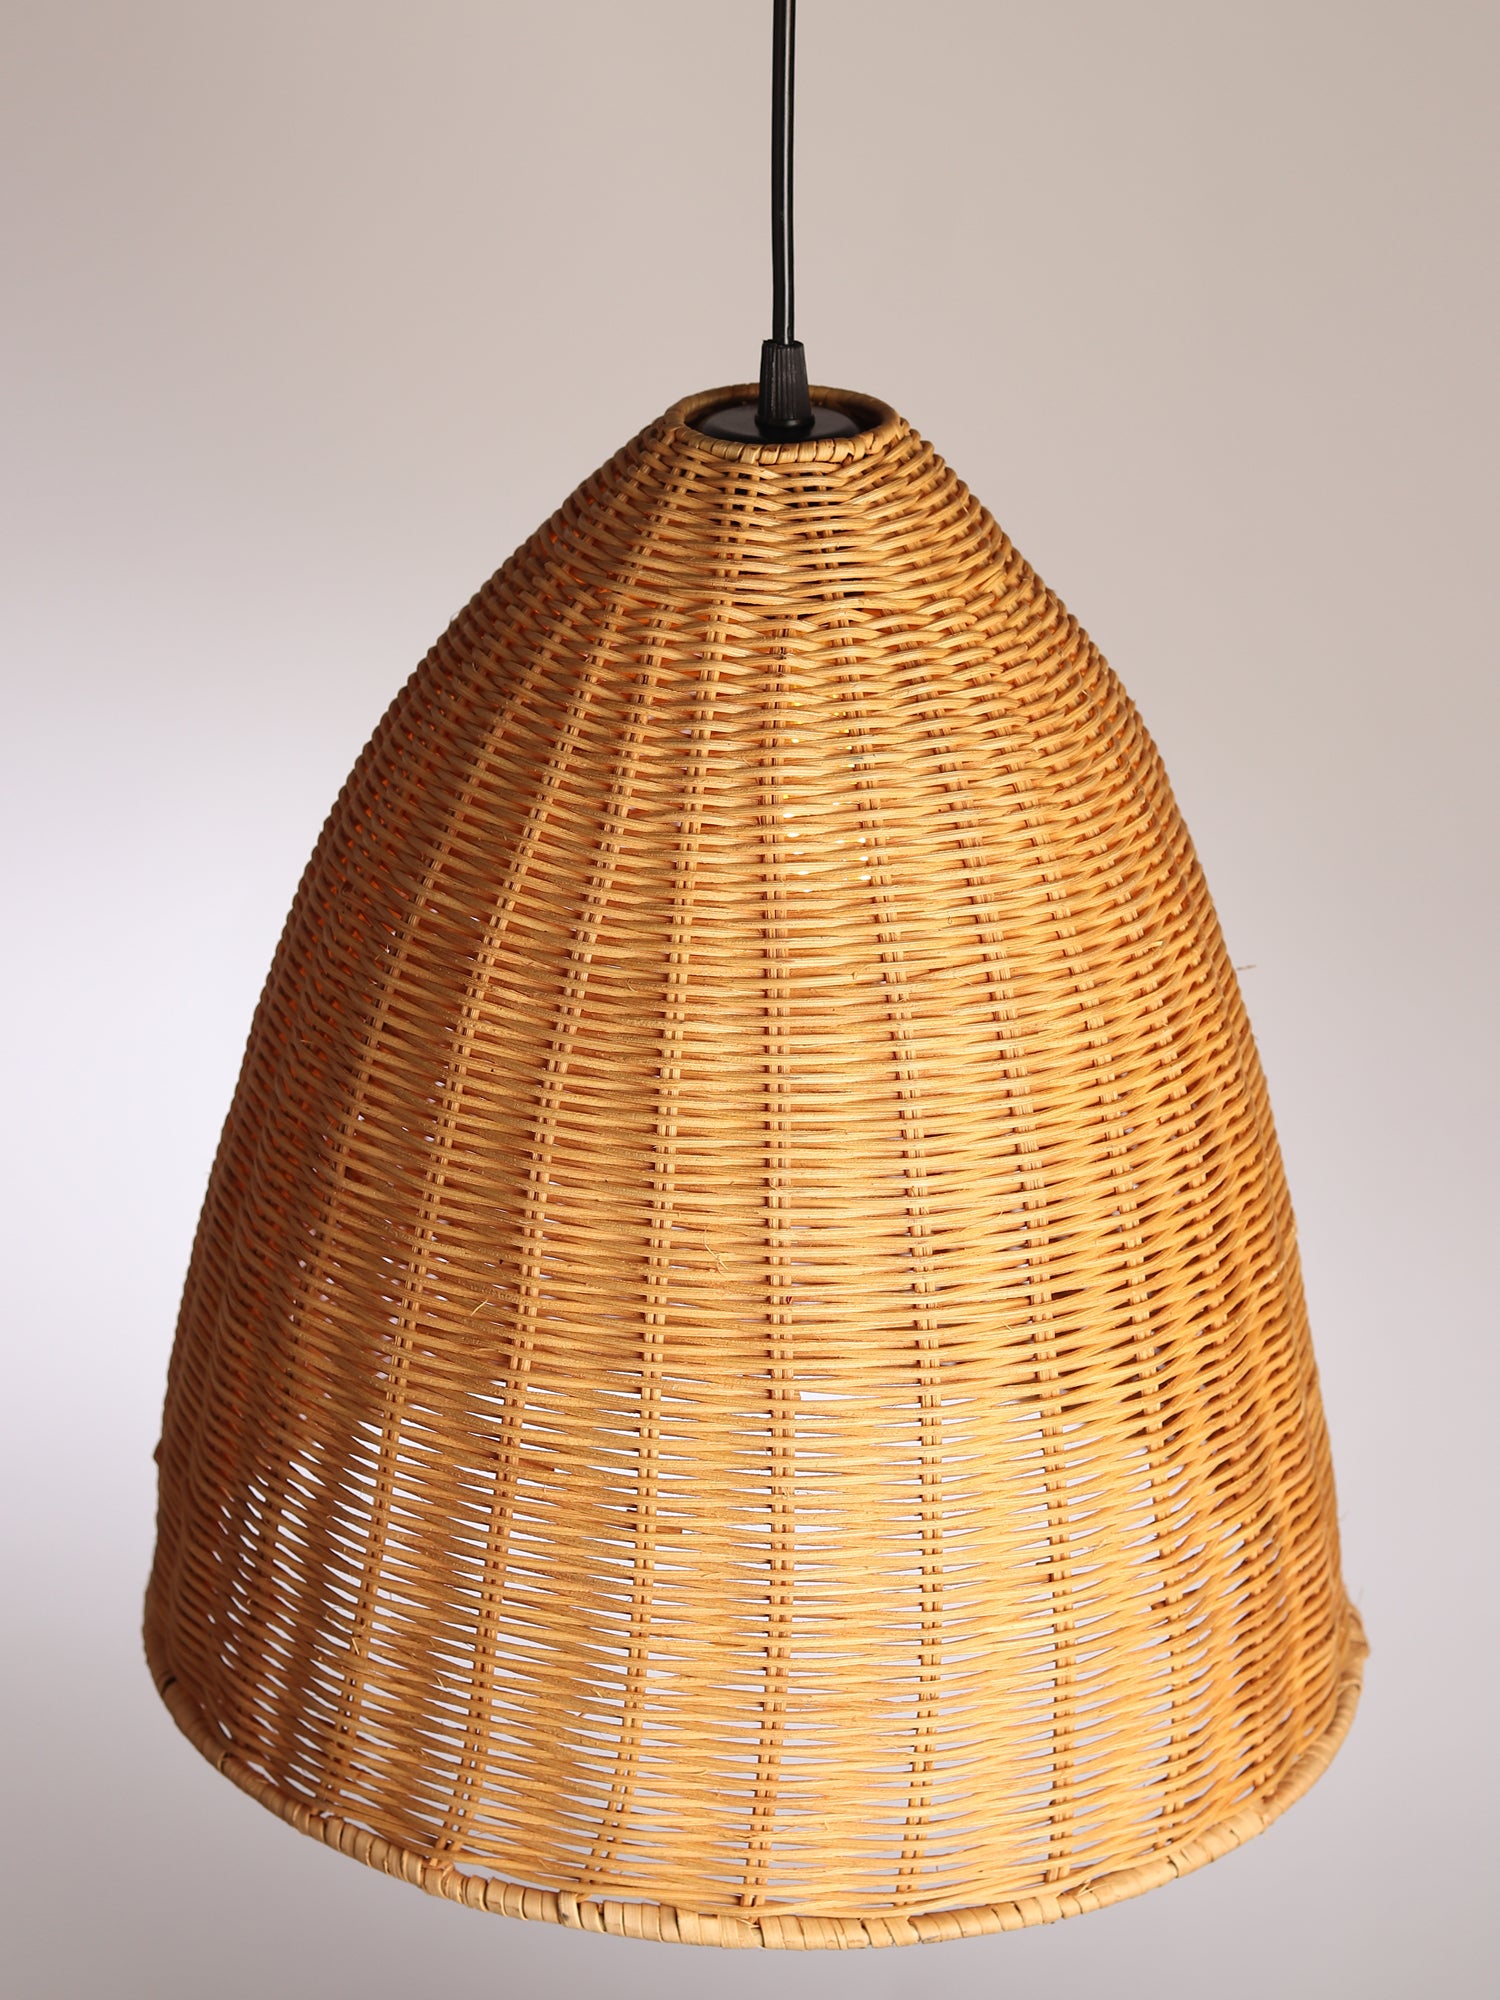 Bamboo Lamps & Rattan Lampshade